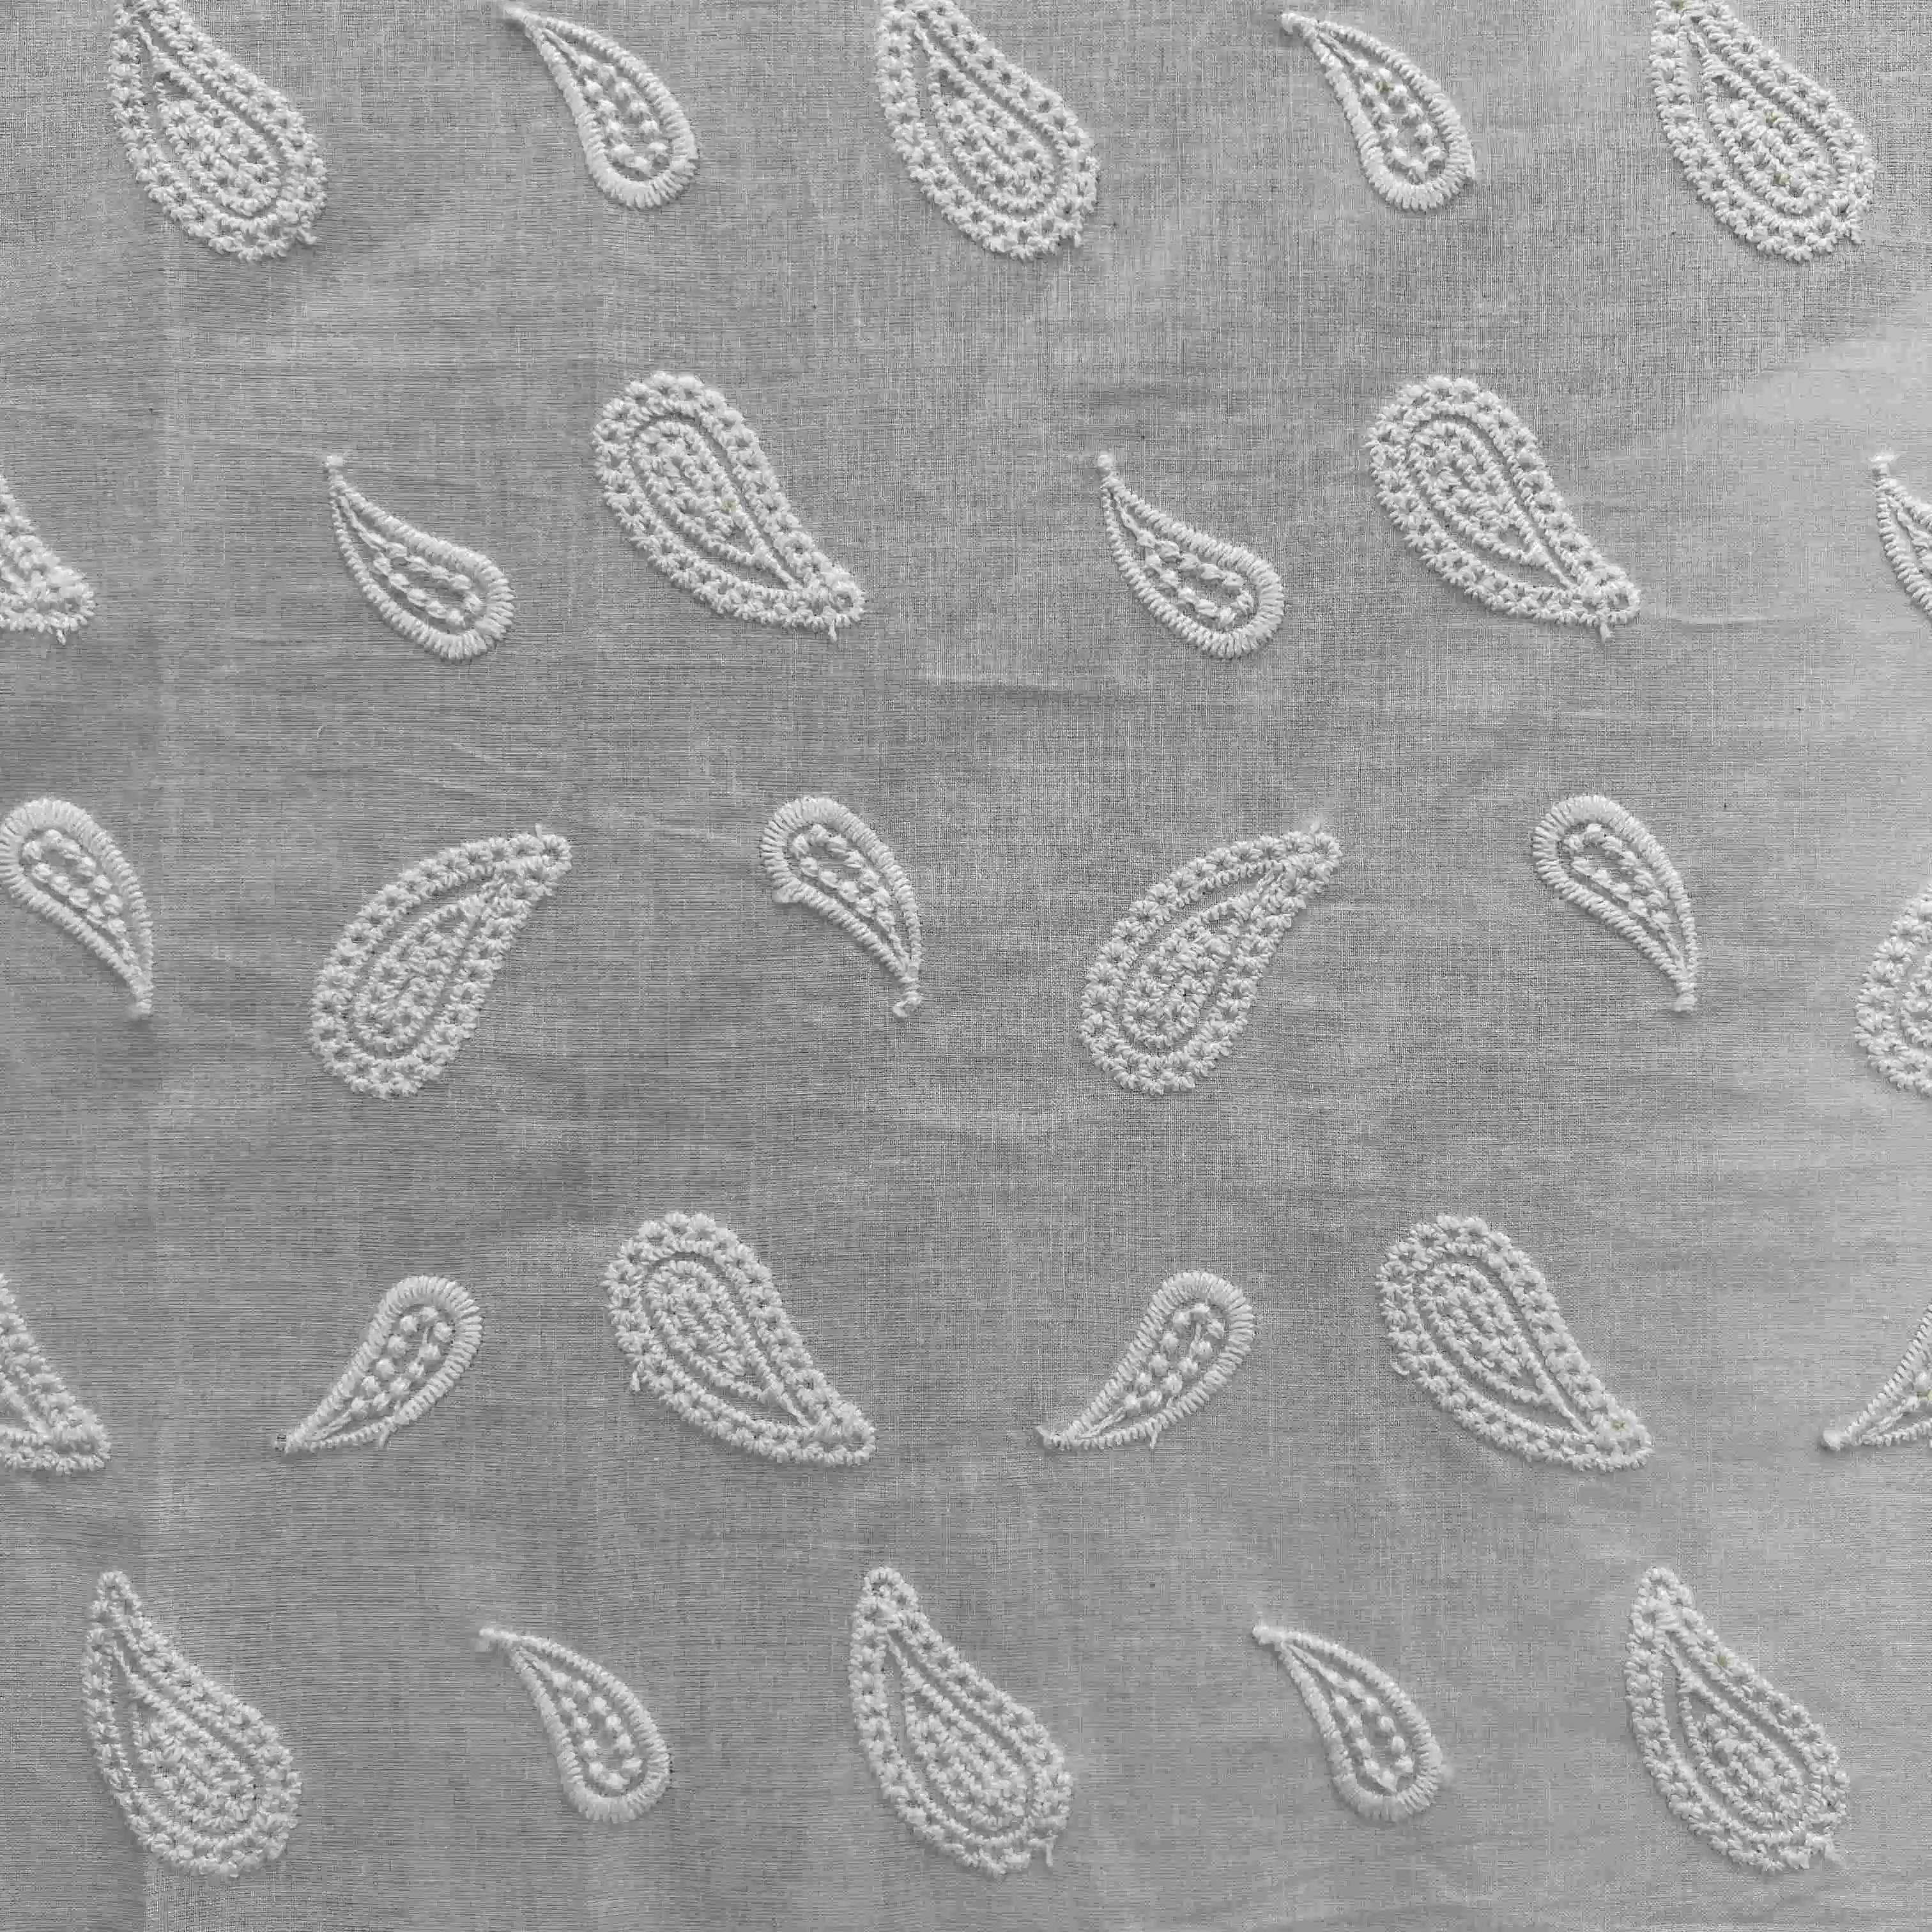 Gz6759 bordado de cuerda tejido de encaje bordado de algodón